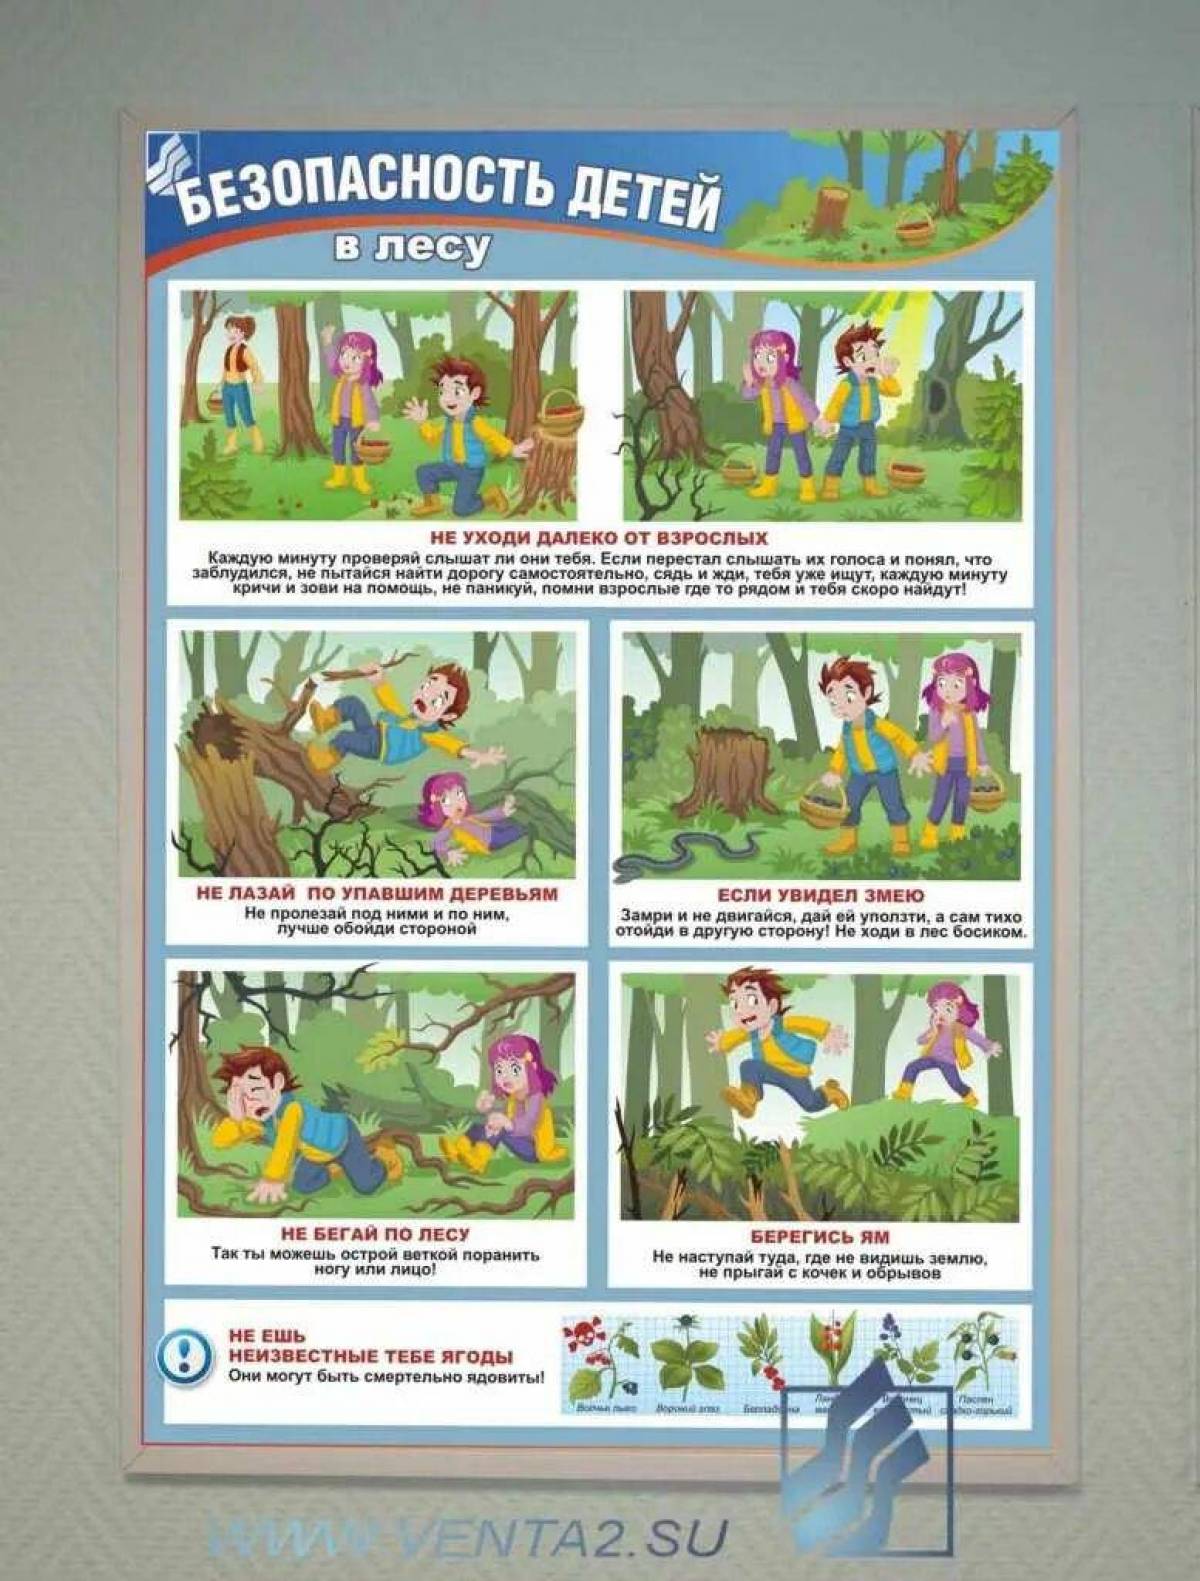 Составить памятку правила поведения в лесу. Безопасность в лесу для детей. Привали поведения в лесу. Безопасность в лесу для дошкольников. Правило безопасного поведения в лесу.